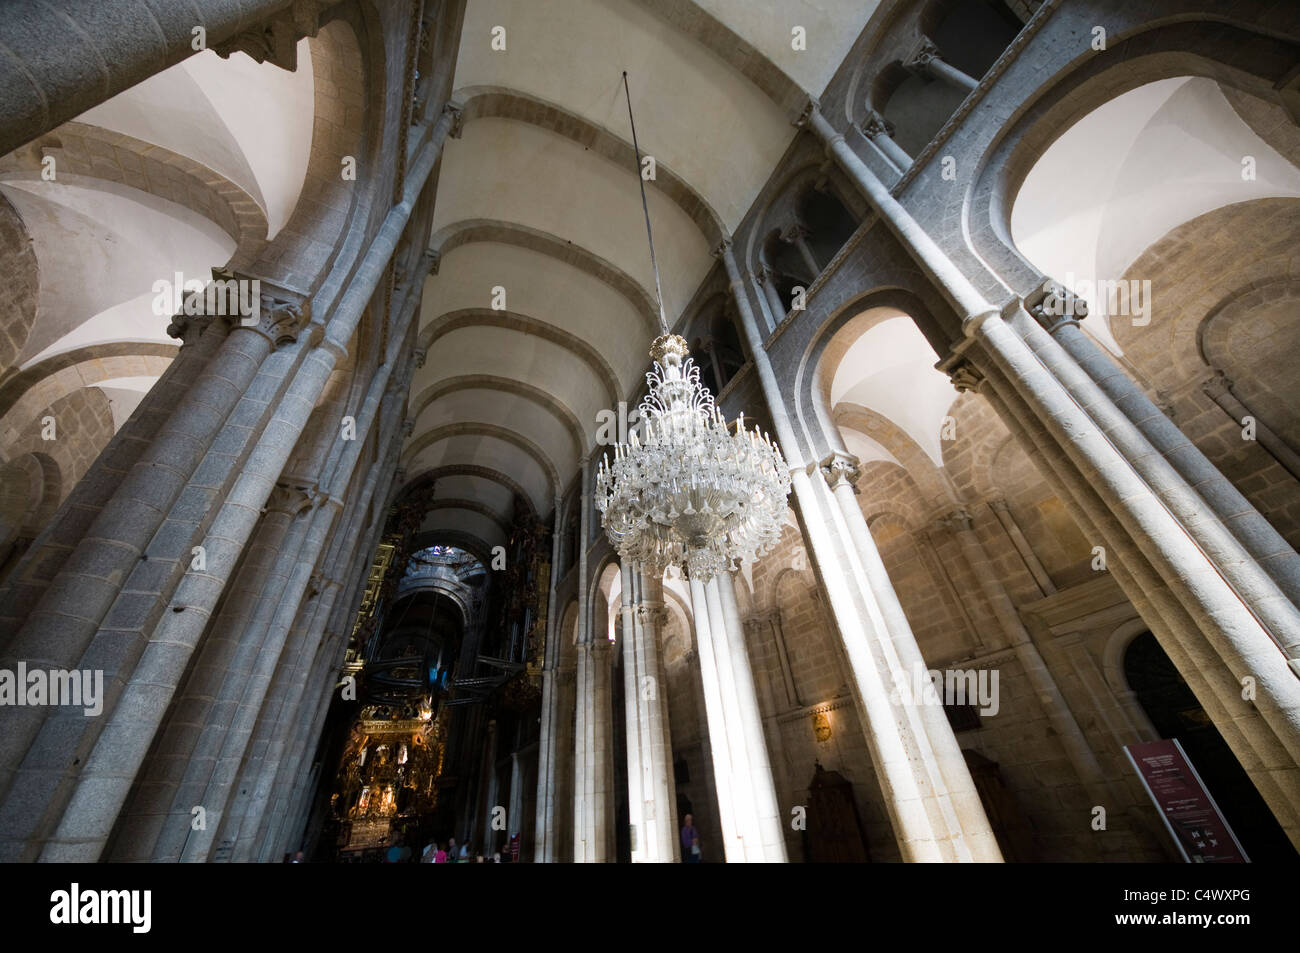 Guardando il soffitto a volta nella cattedrale di Santiago di Compostela, Foto Stock